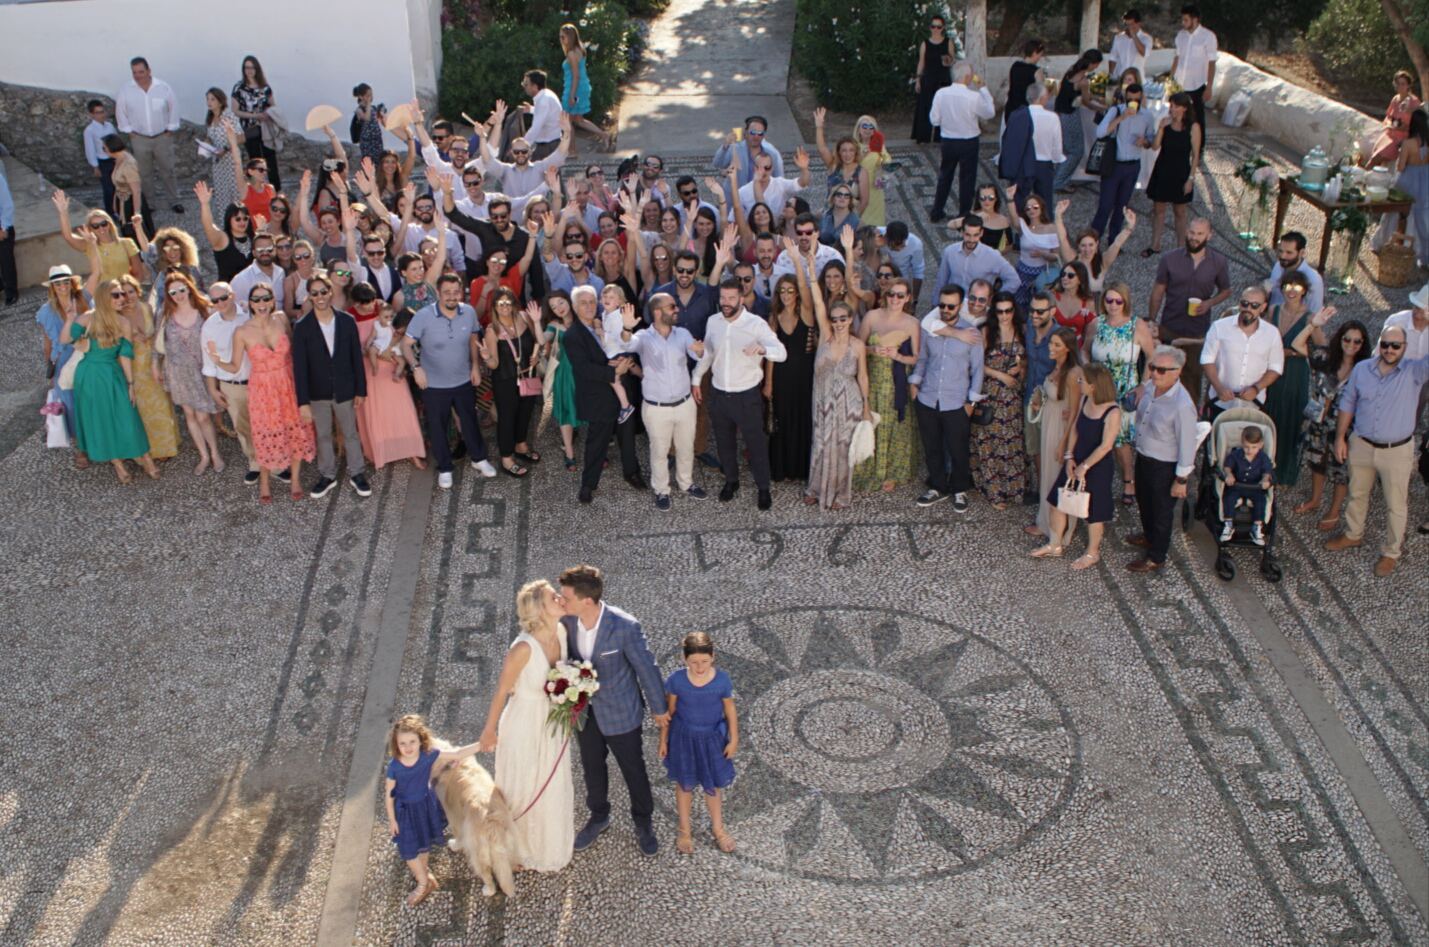 Και φυσικά μια αναμνηστική φωτογραφία με όλους τους καλεσμένους μετά το τέλος του γάμου!